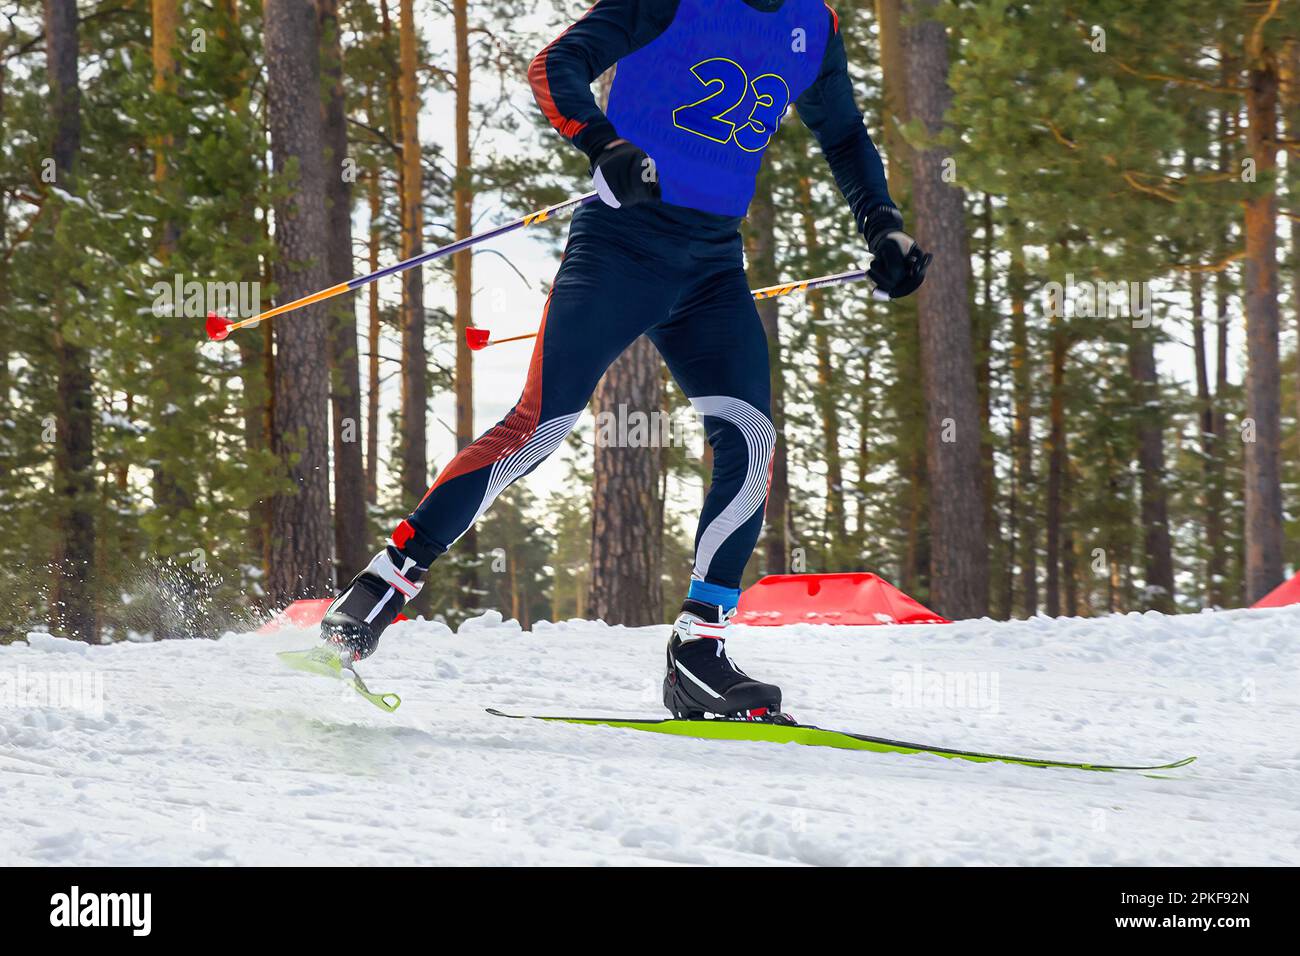 athlète masculin skieur course ski de fond, compétition de sports d'hiver Banque D'Images